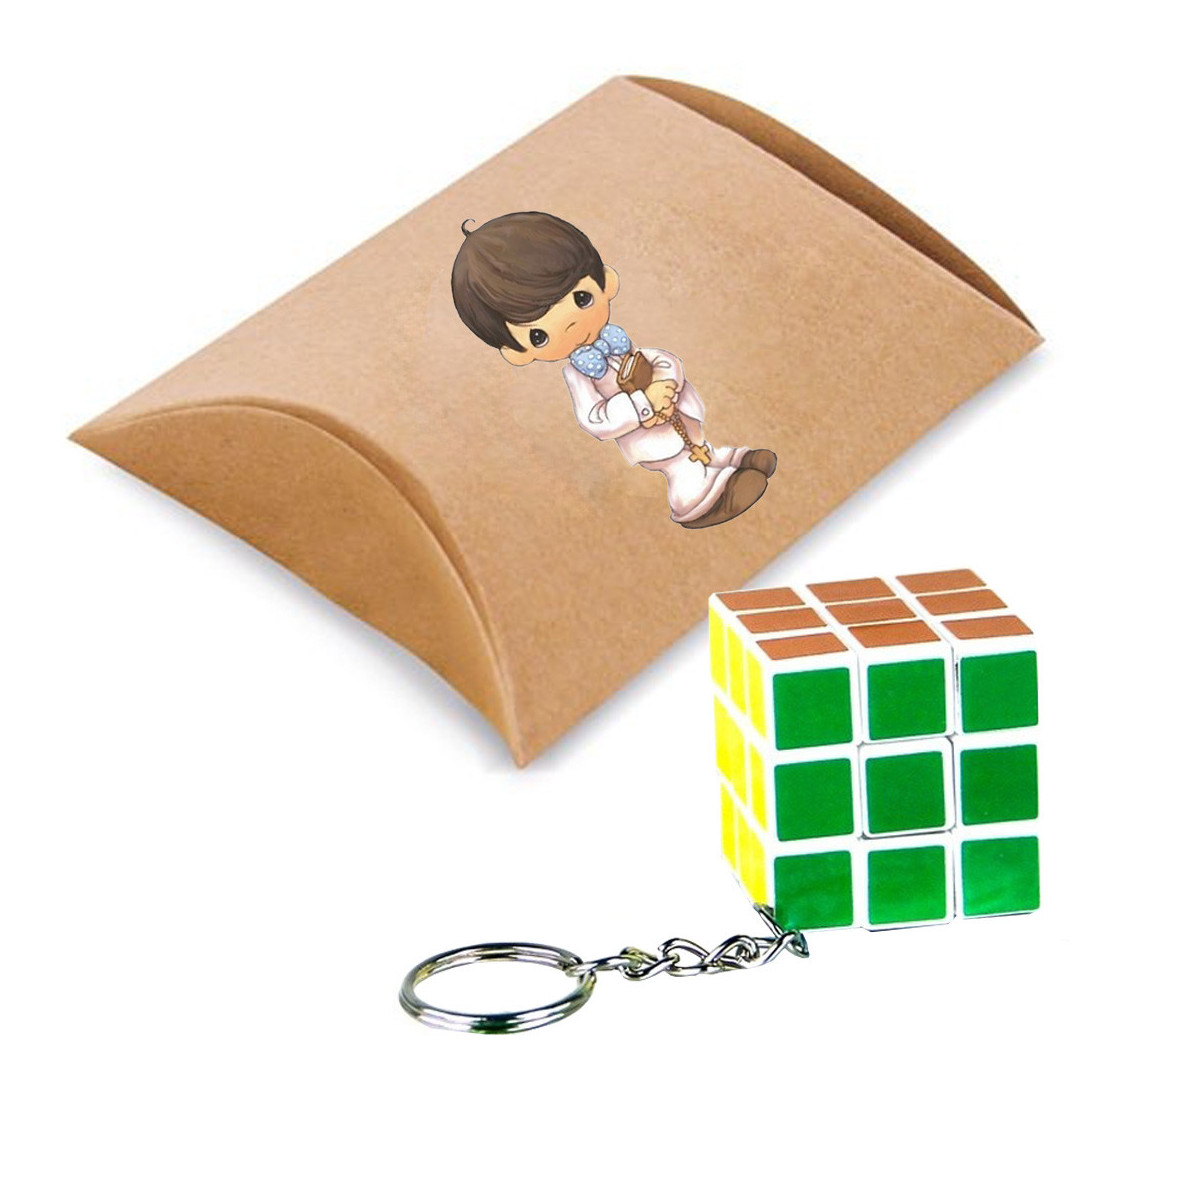 Porte clés puzzle cube avec boîte en carton et autocollant communion boy